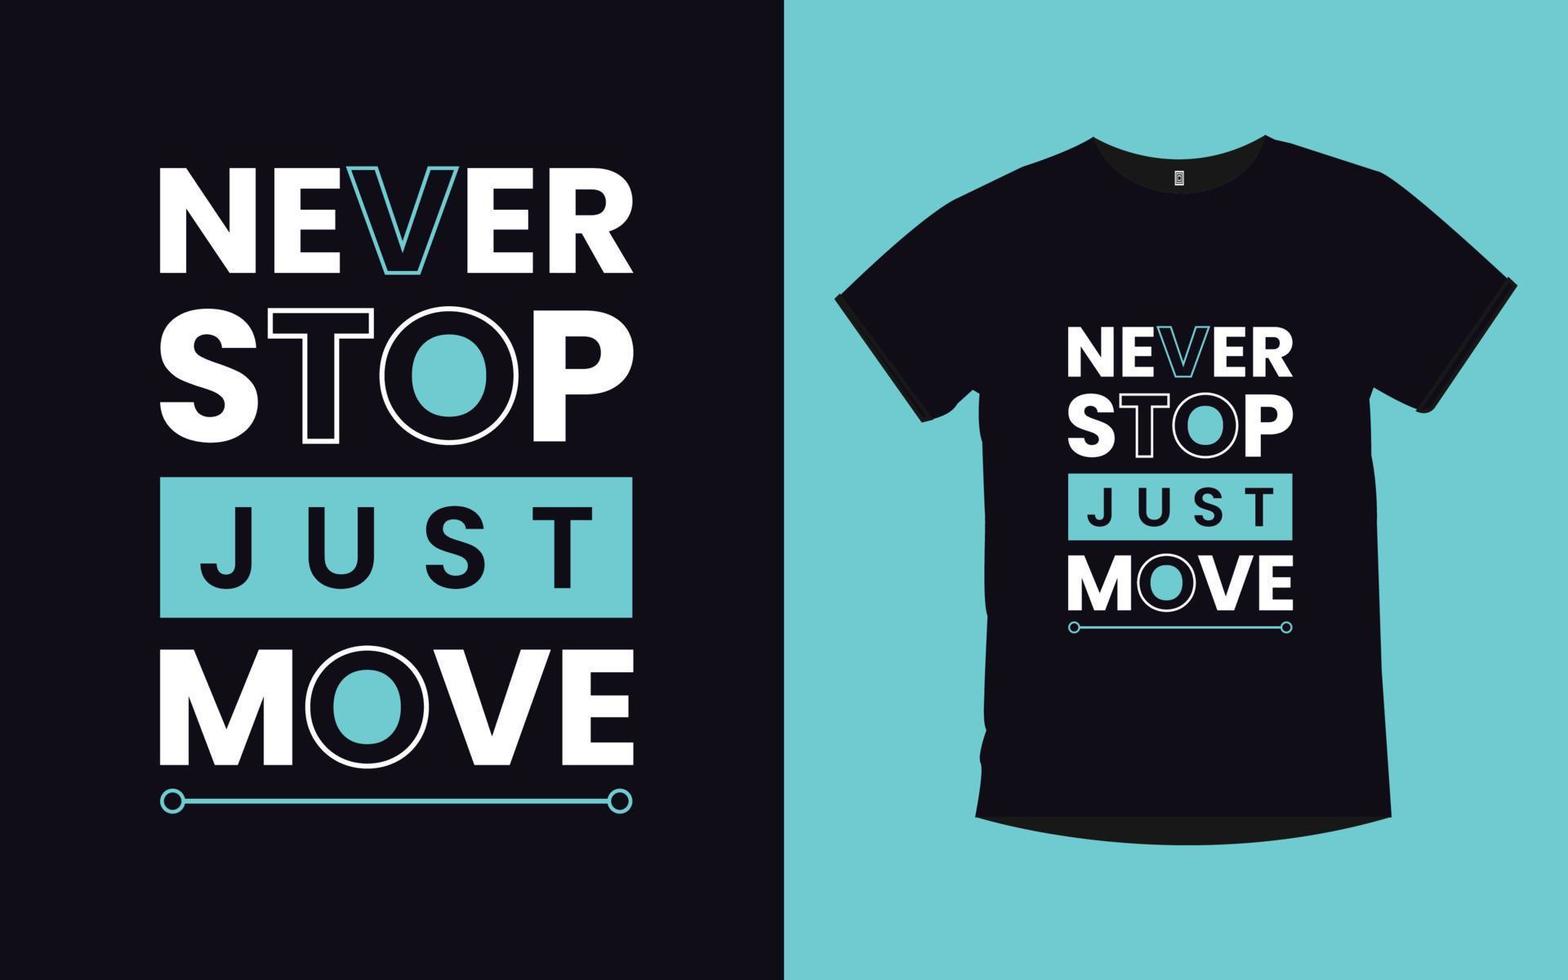 motiverende citaten moderne creatieve typografie t-shirt en mok ontwerp vector